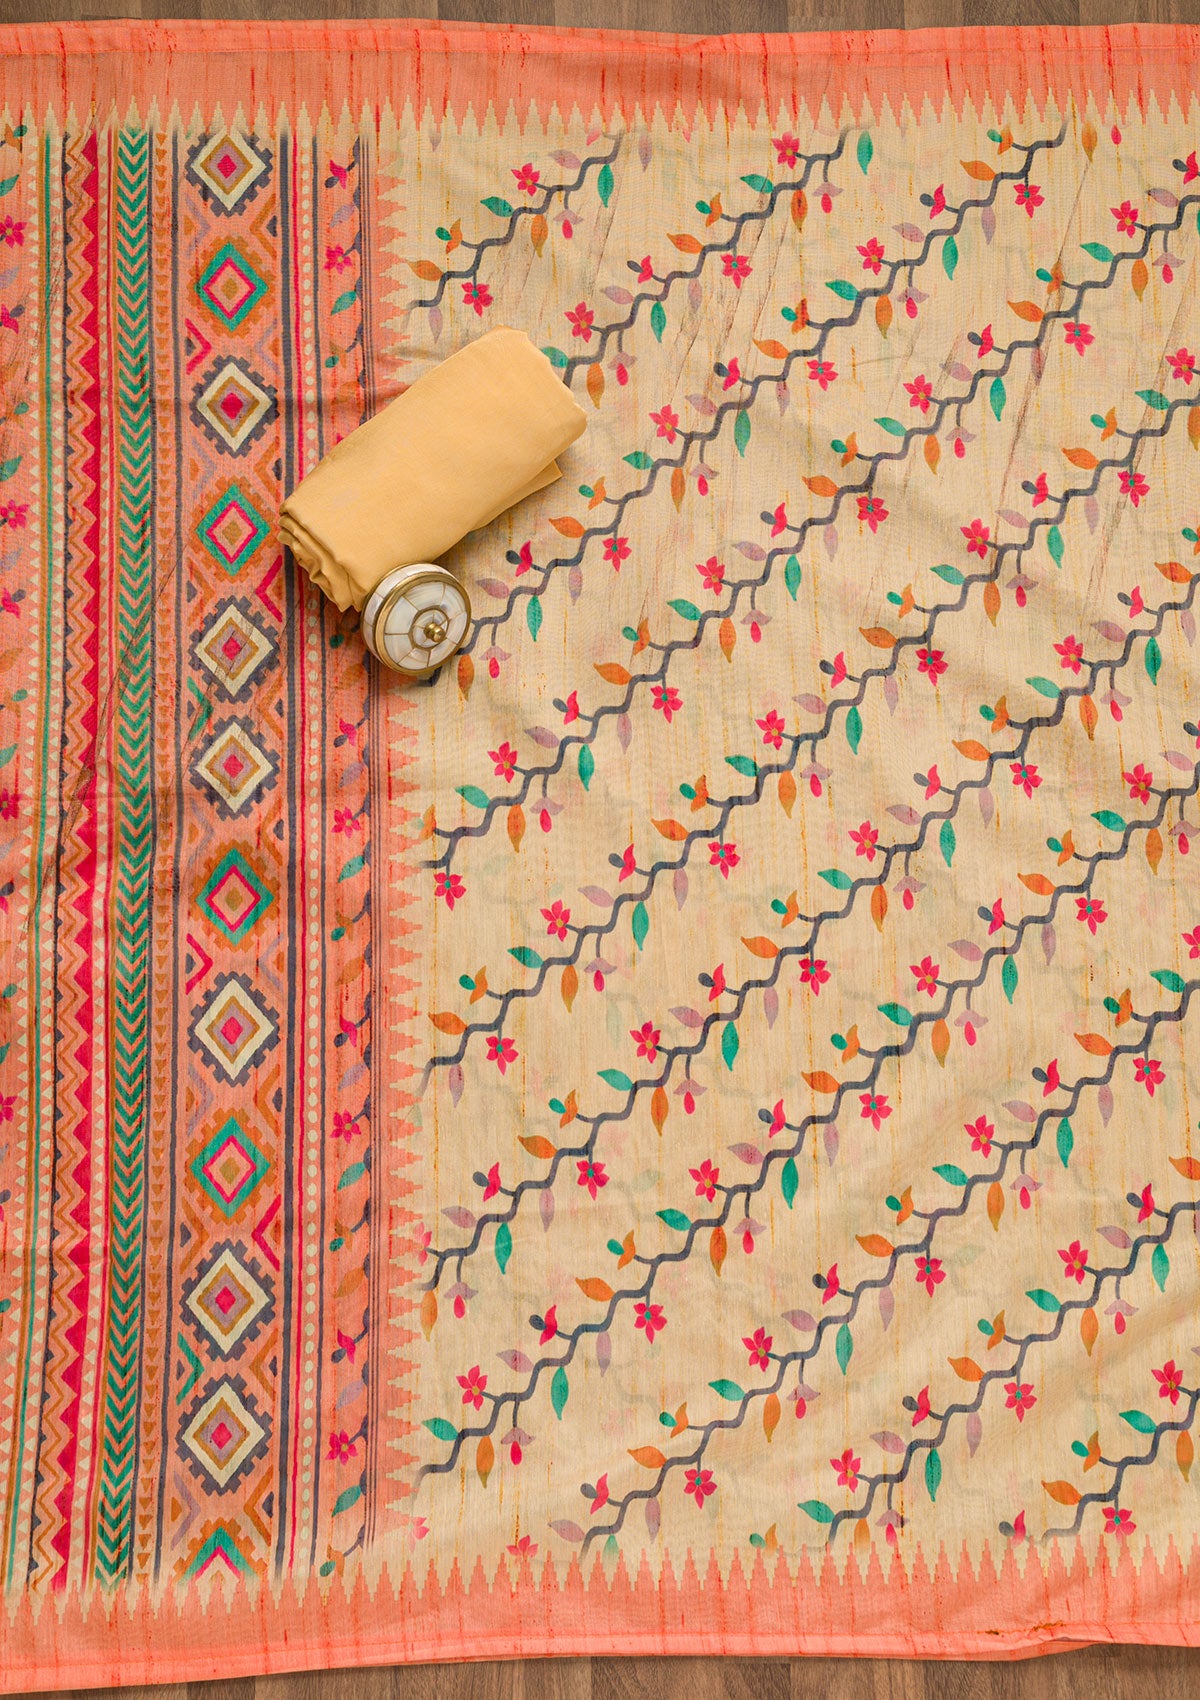 Yellow Threadwork Chanderi Unstitched Salwar Suit